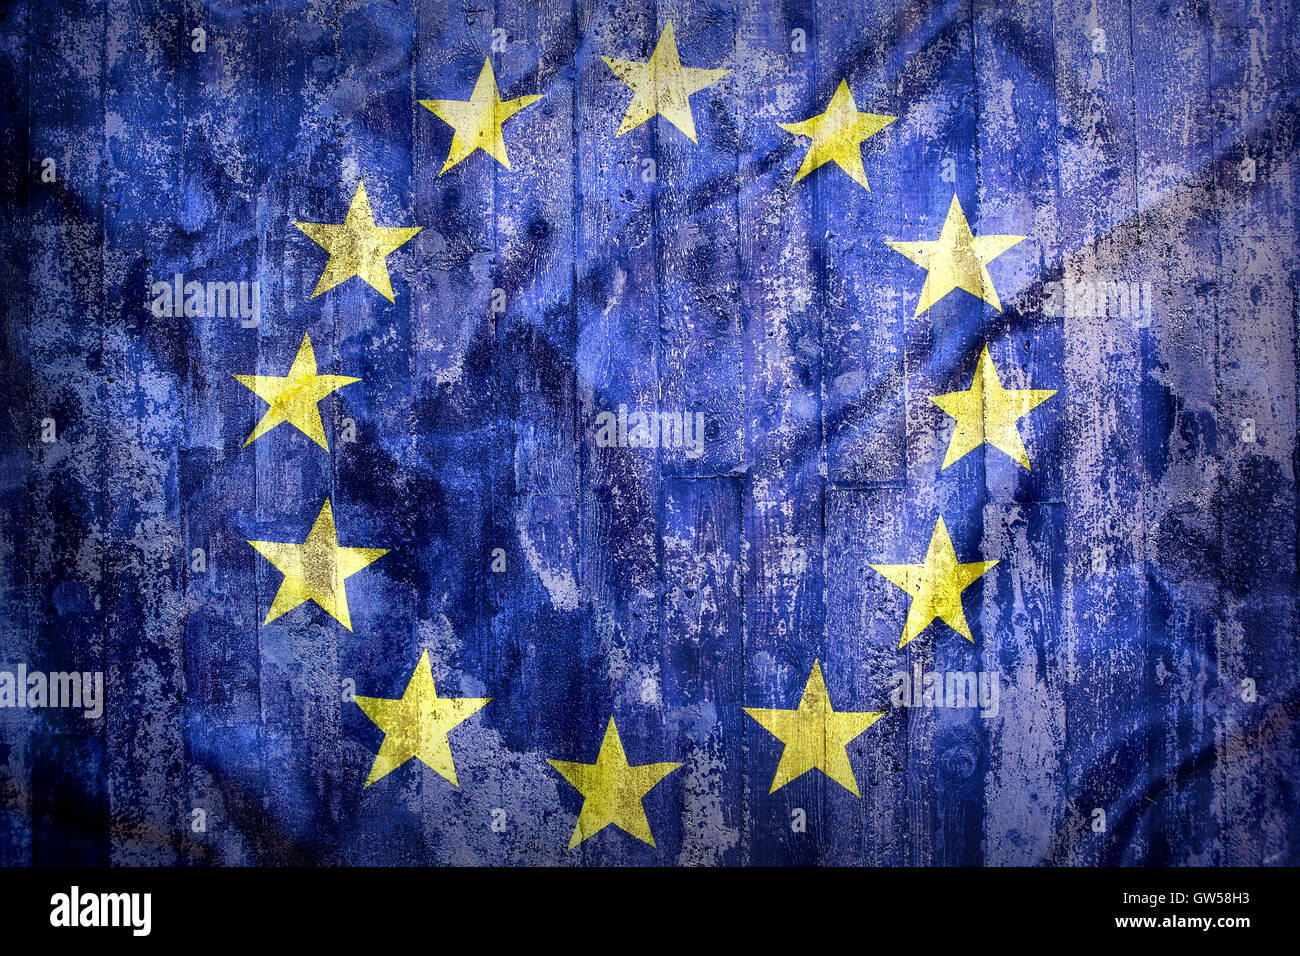 Grunge style du drapeau de l'Union européenne sur un mur de brique pour le fond Banque D'Images